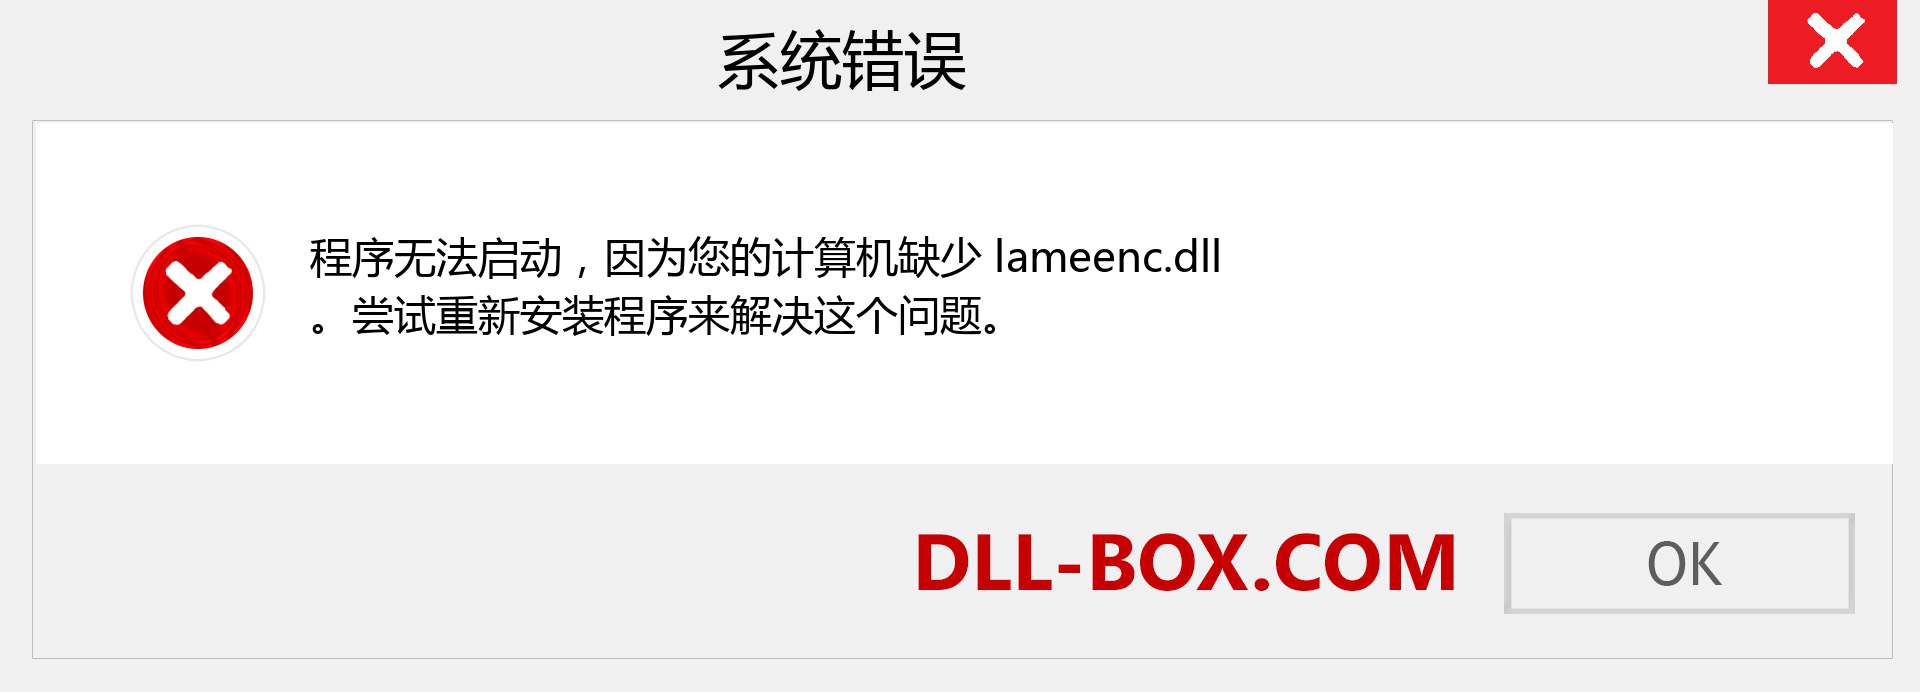 lameenc.dll 文件丢失？。 适用于 Windows 7、8、10 的下载 - 修复 Windows、照片、图像上的 lameenc dll 丢失错误